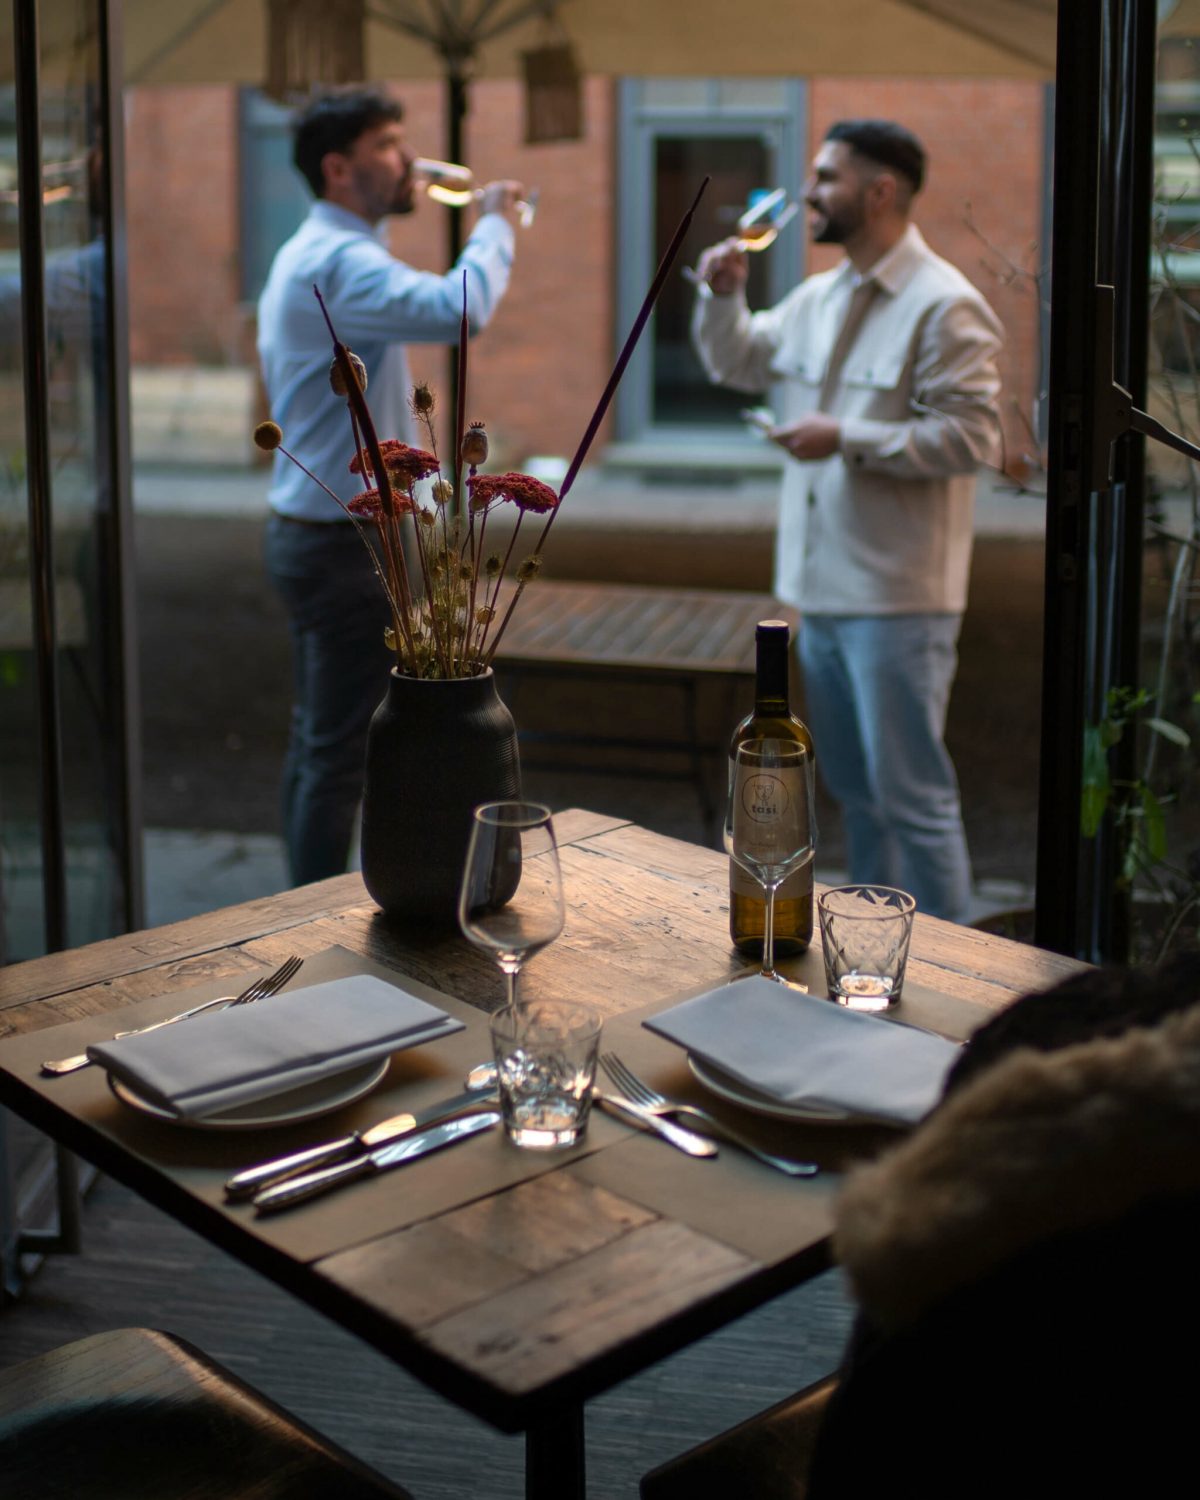 Zwei Männer, die draußen bei gedämpftem Licht Wein trinken, mit einem Vordergrund von einem Tisch mit einer Vase und Weinflasche.